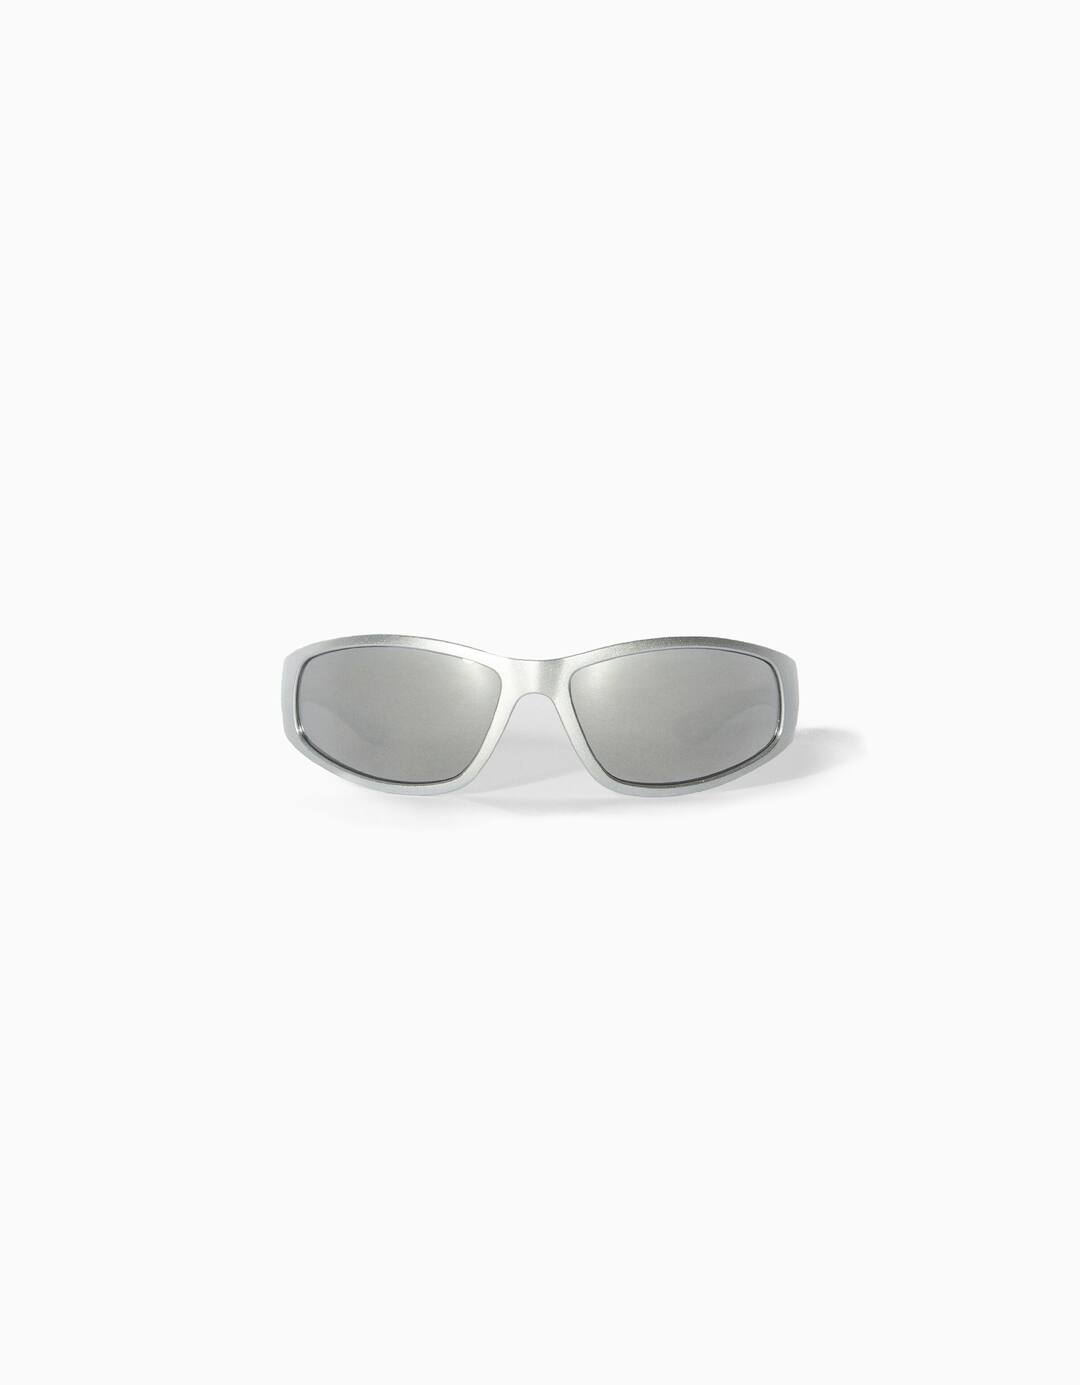 Chrome sunglasses